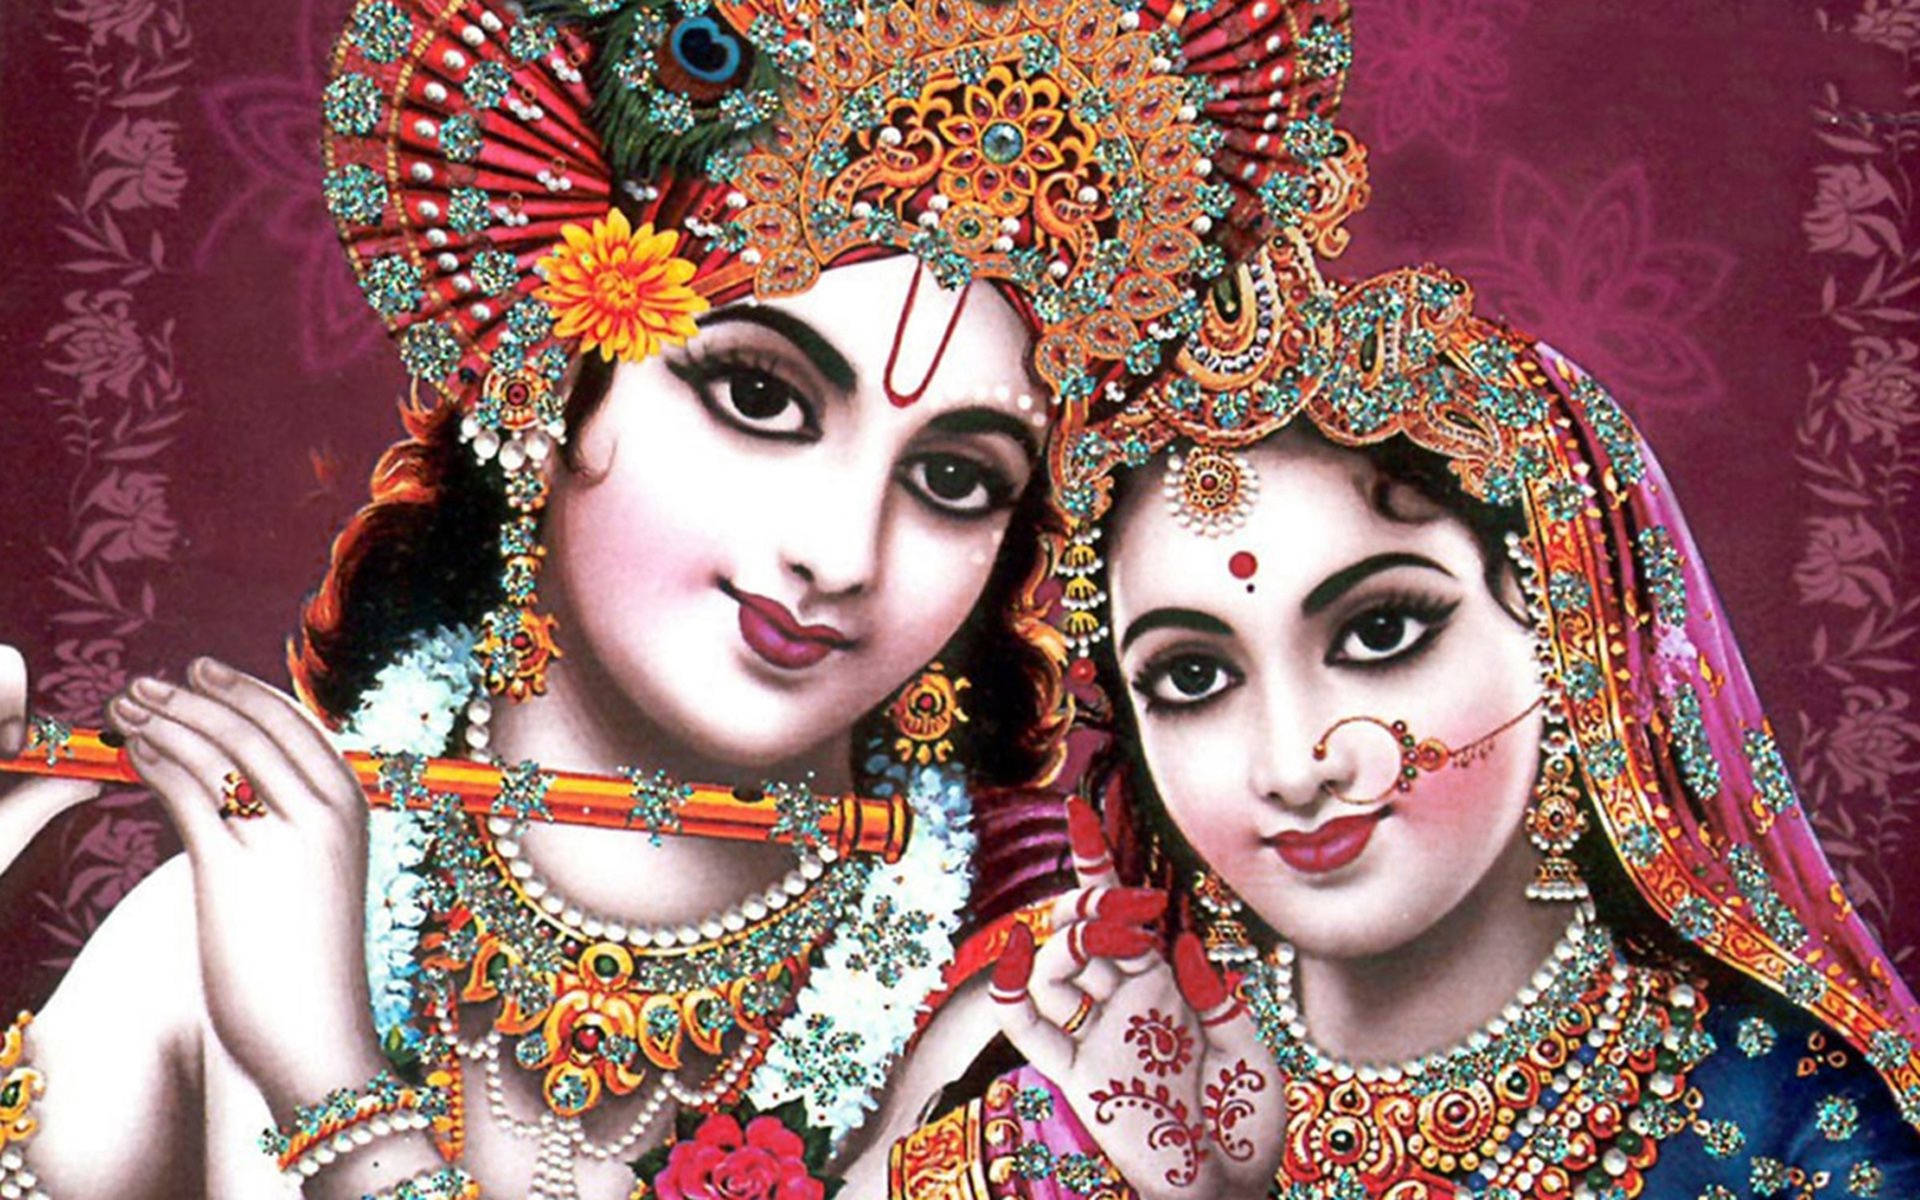 Lord Krishna 4K And Lady Radha Digital Art Wallpaper